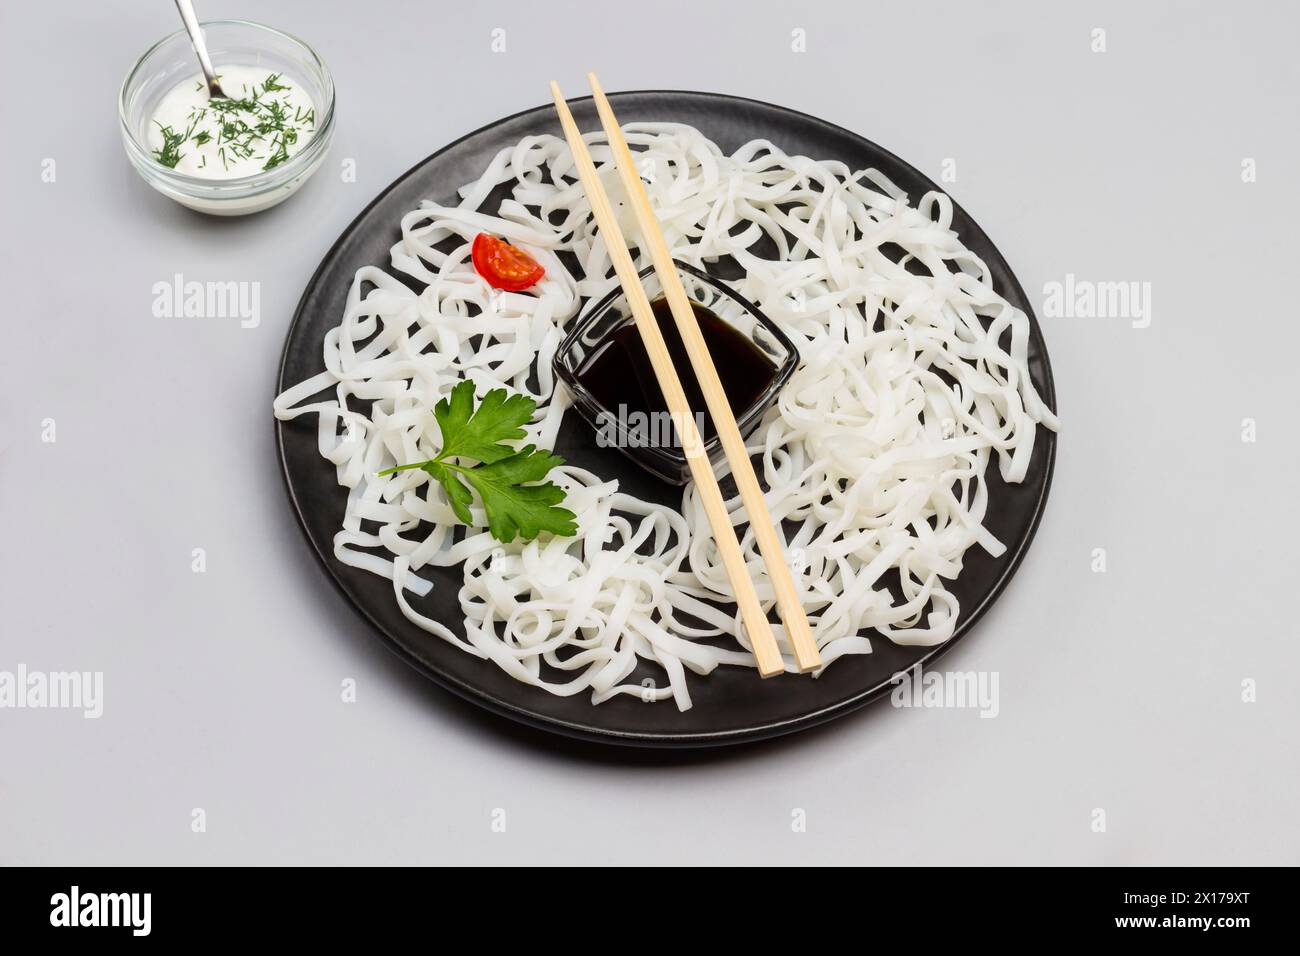 Spaghetti di riso con salsa, bastoncini di bambù sul piatto nero. Pomodori ciliegini nel recipiente con salsa bianca sul tavolo. Sfondo grigio. Vista dall'alto. Foto Stock